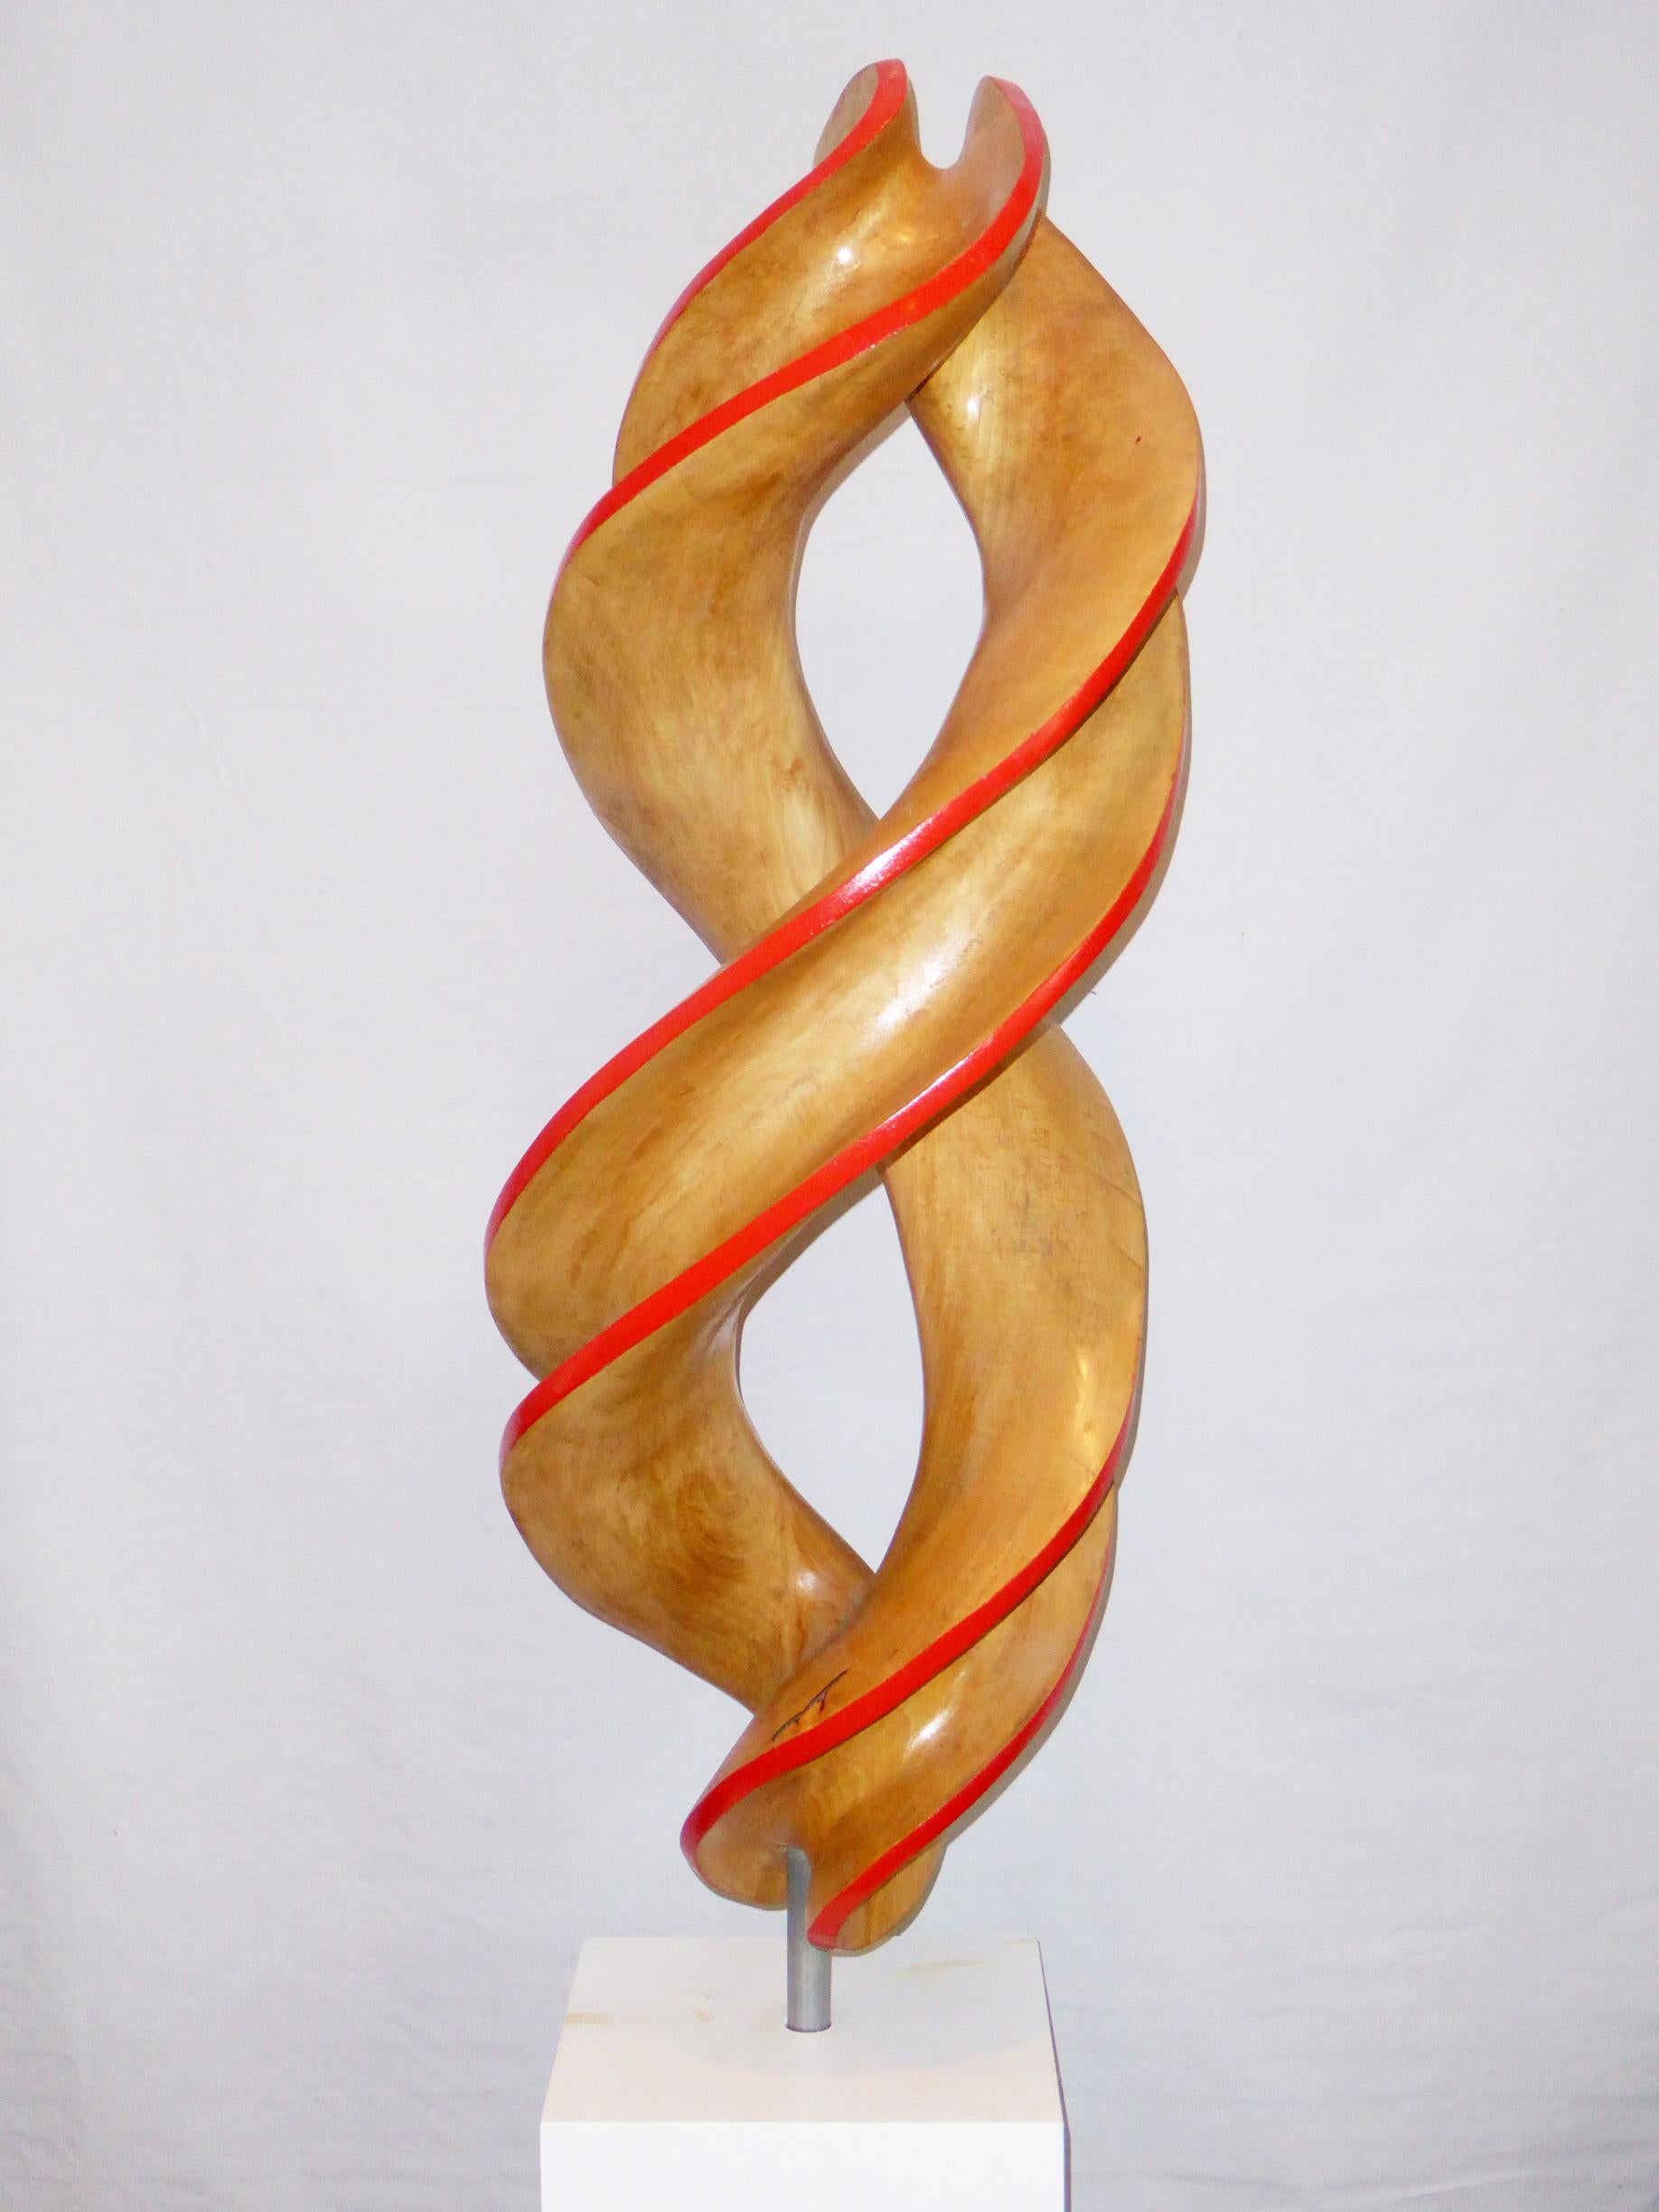 Abstract Sculpture Eric Pesso - Spiral n°2 - Rouge, grande sculpture en érable, sculptée et peinte